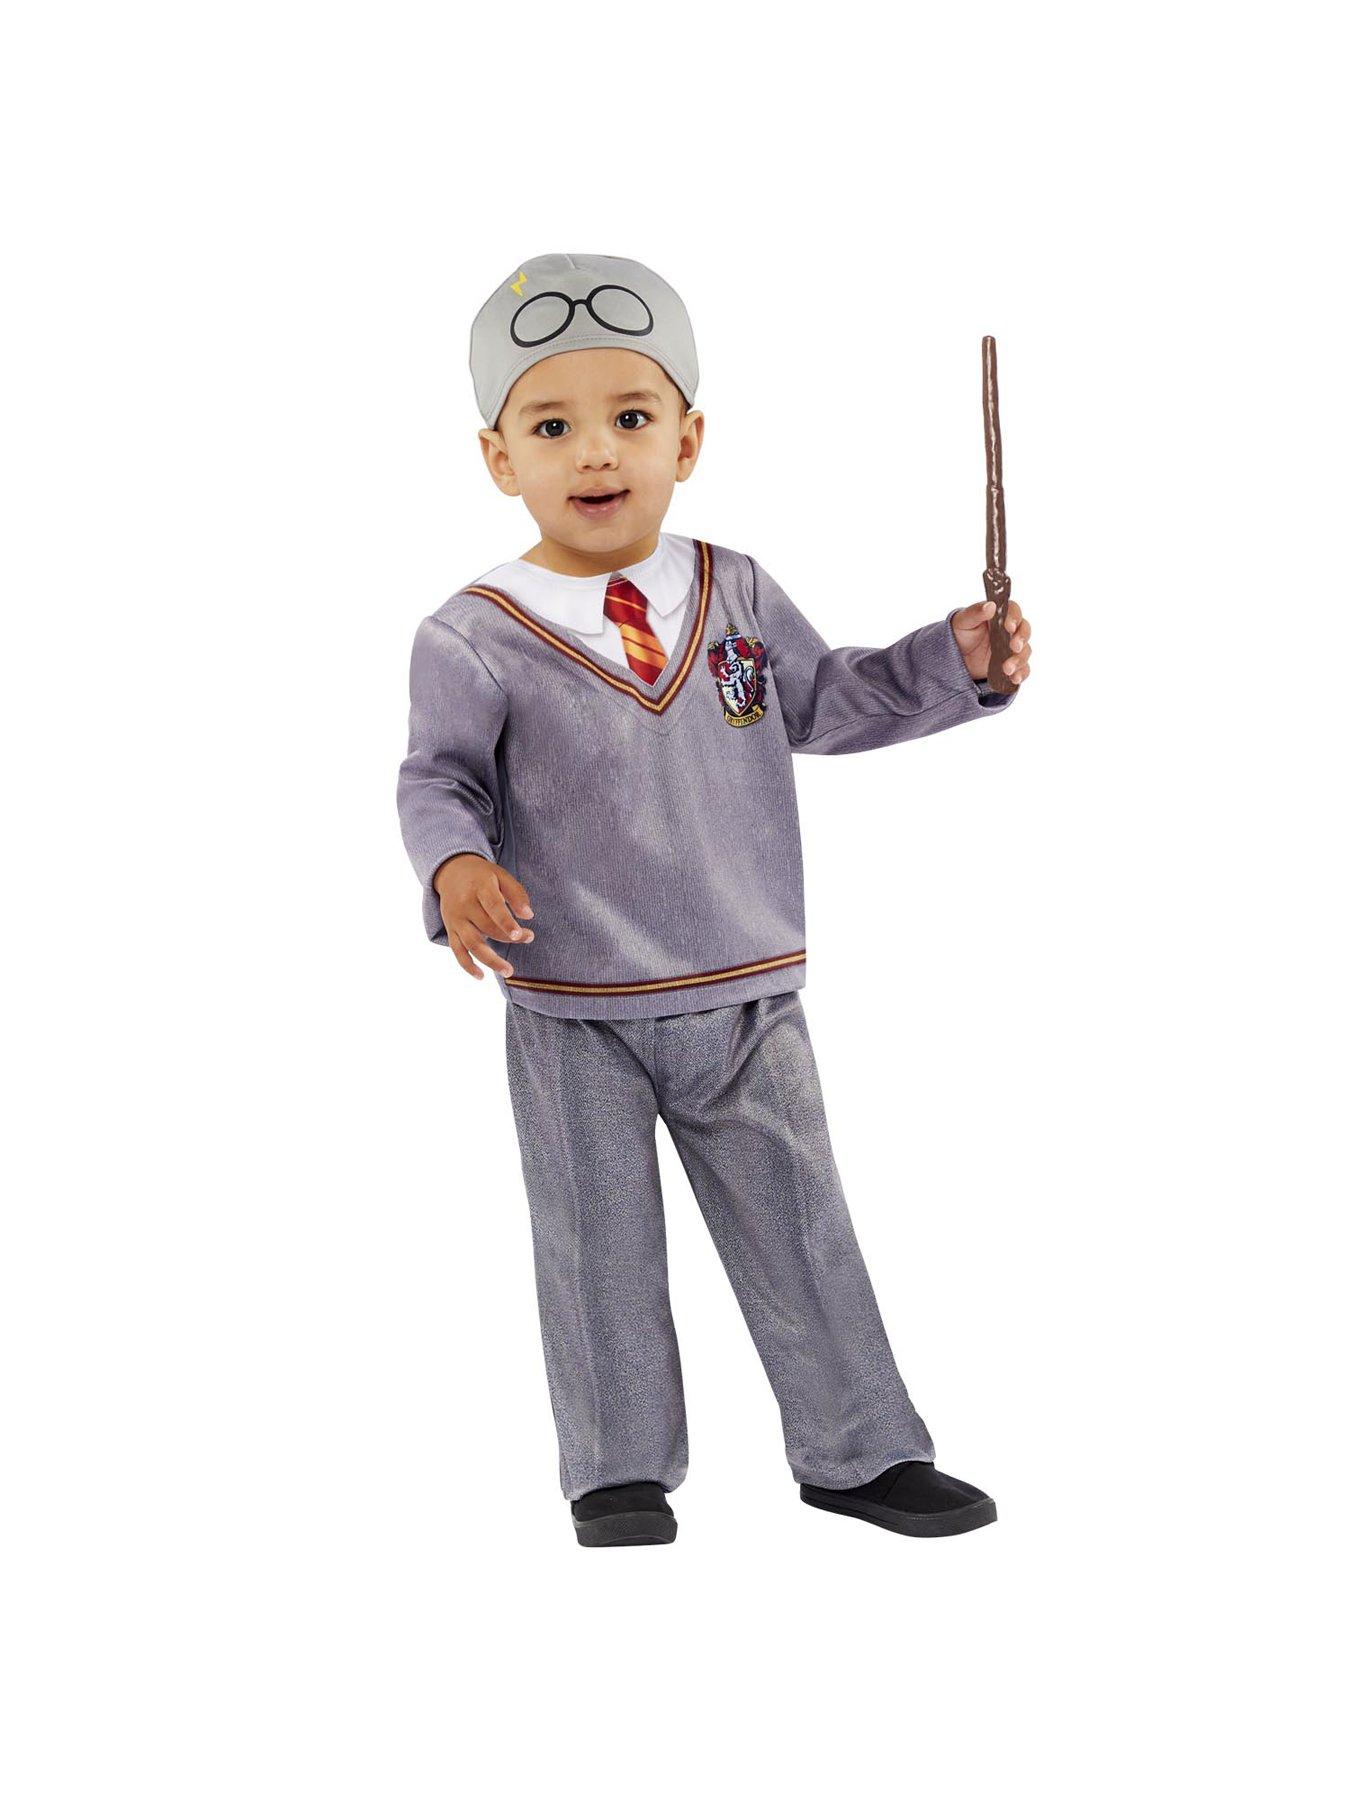 Harry Potter Toddler Harry Potter Costume | littlewoods.com